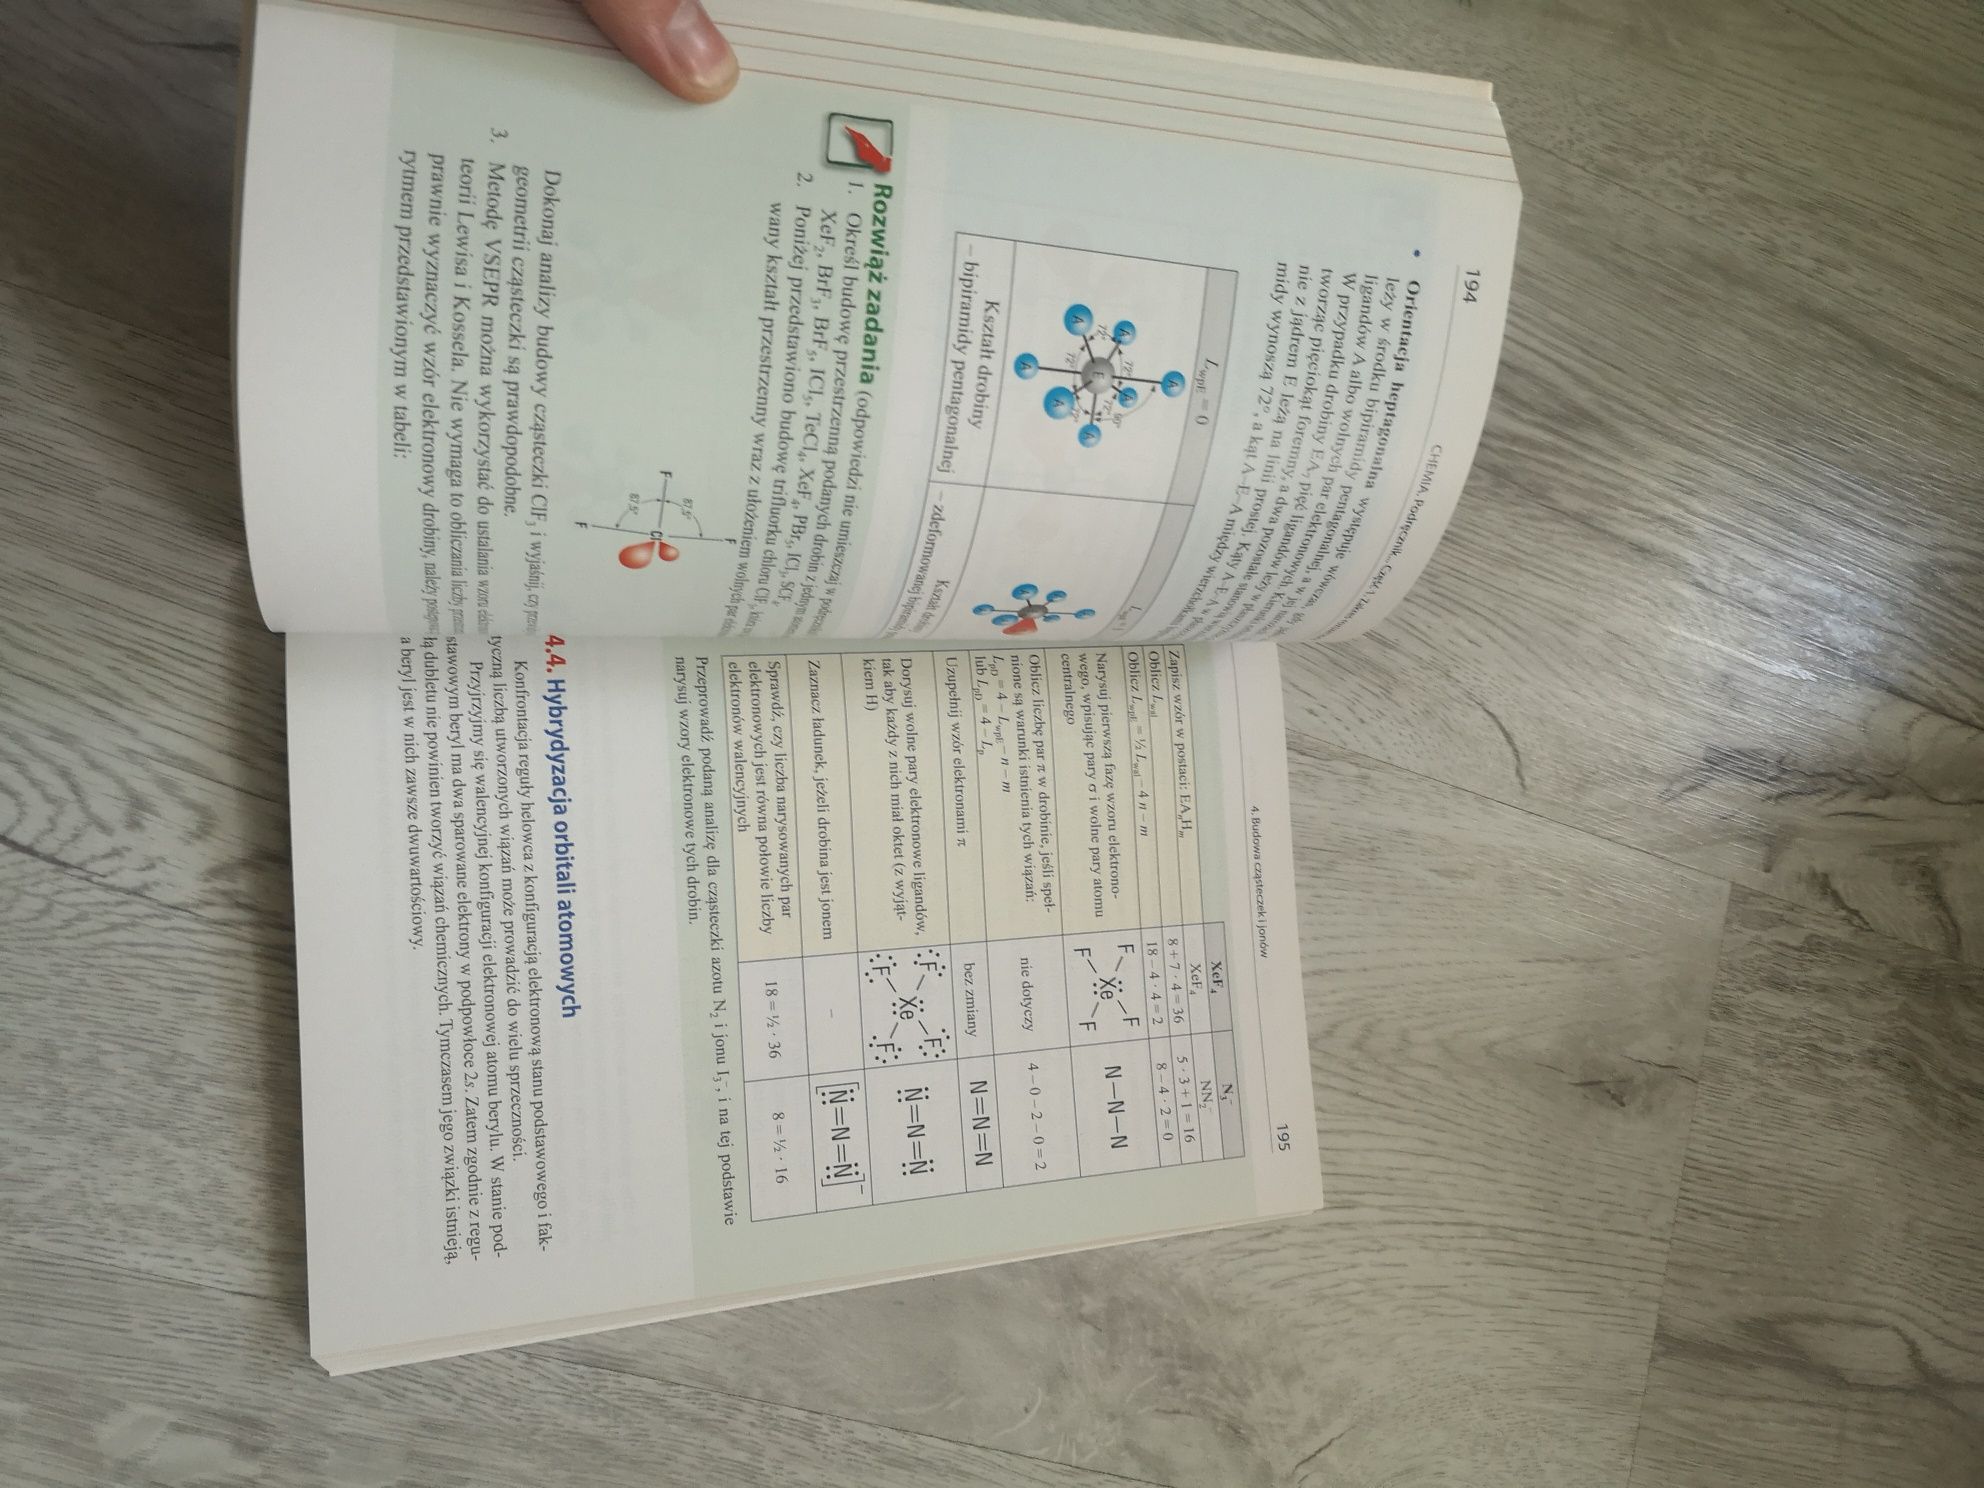 Podręcznik do chemii